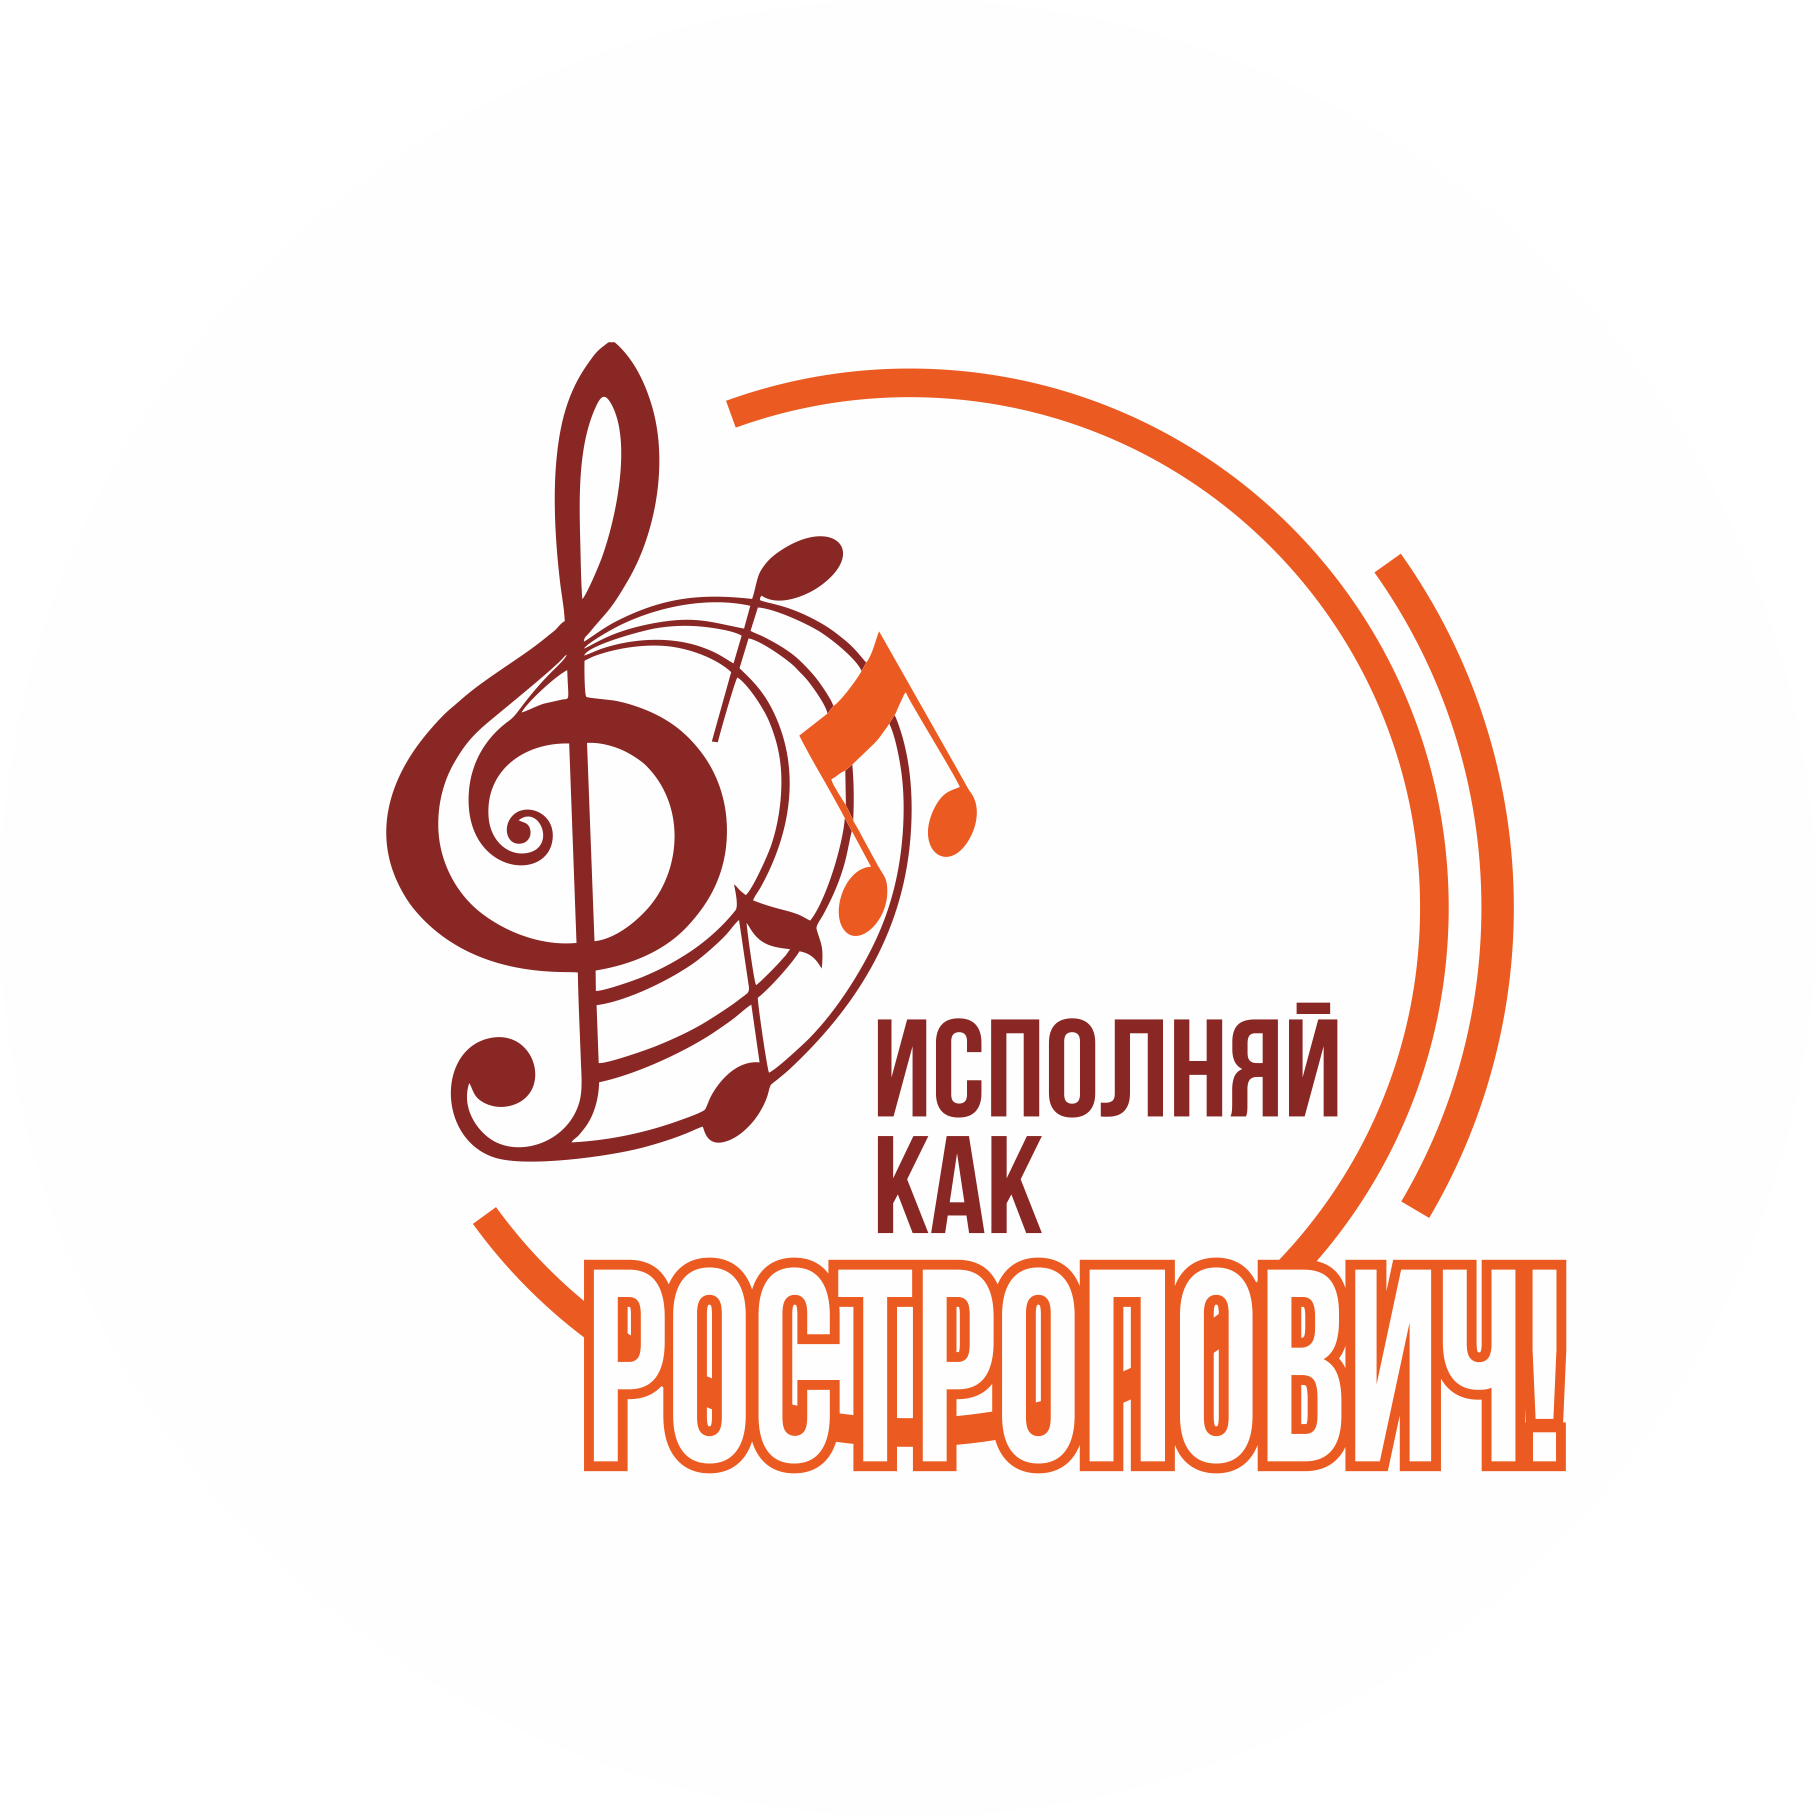 Культурный фестиваль «Исполняй как Ростропович!»